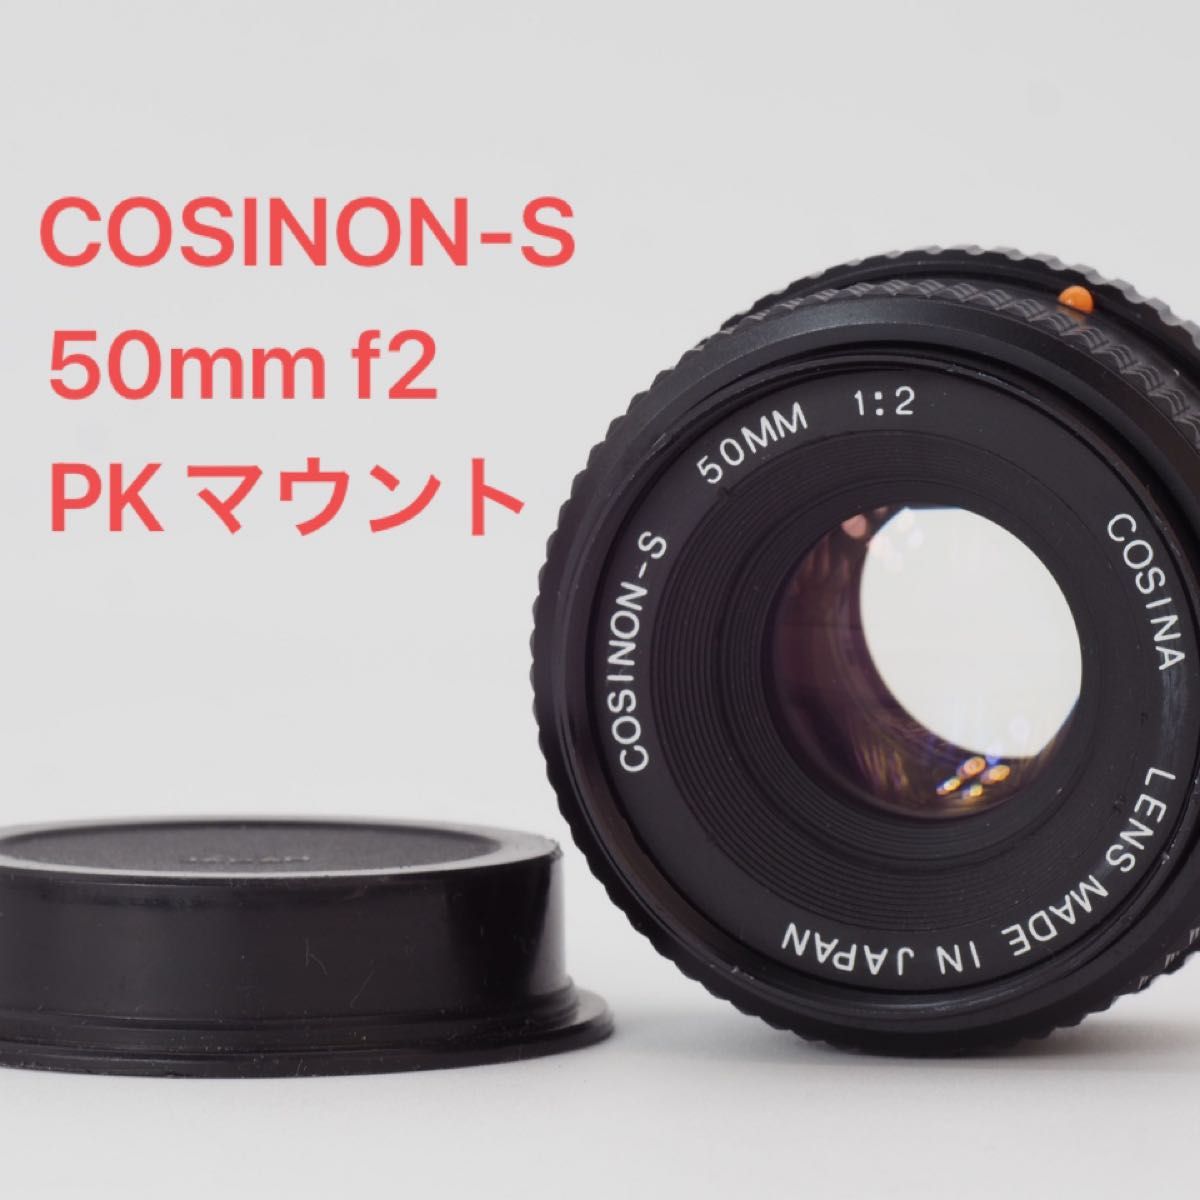 コシナ PKマウント用 COSINON-S 50mm f2 オールドレンズ